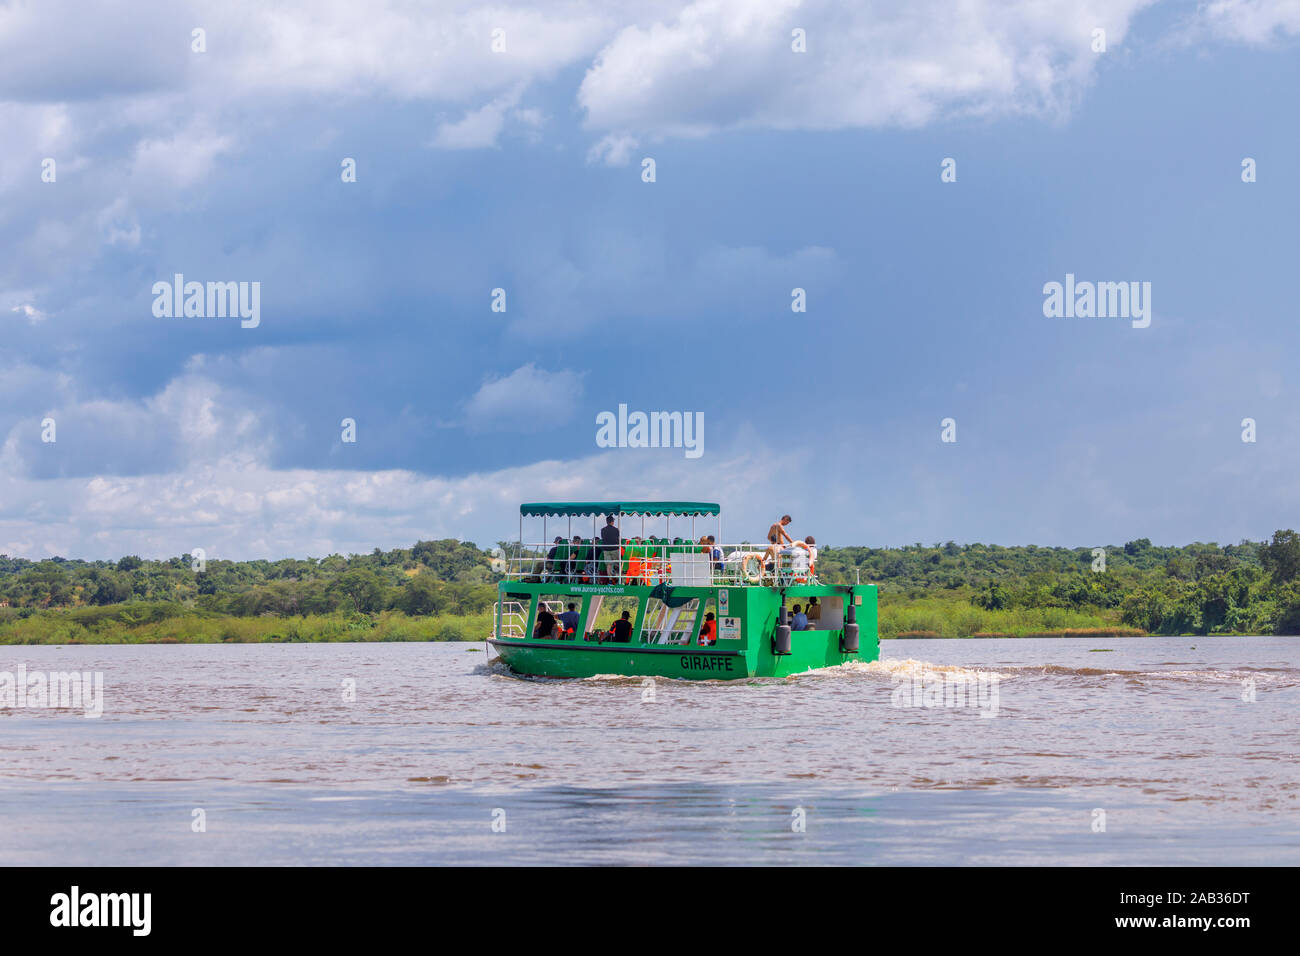 Typische touristische Wildlife Safari Schiff unterwegs Segeln auf der Victoria Nil, North West Uganda an einem sonnigen Tag mit Regen Wolken Stockfoto